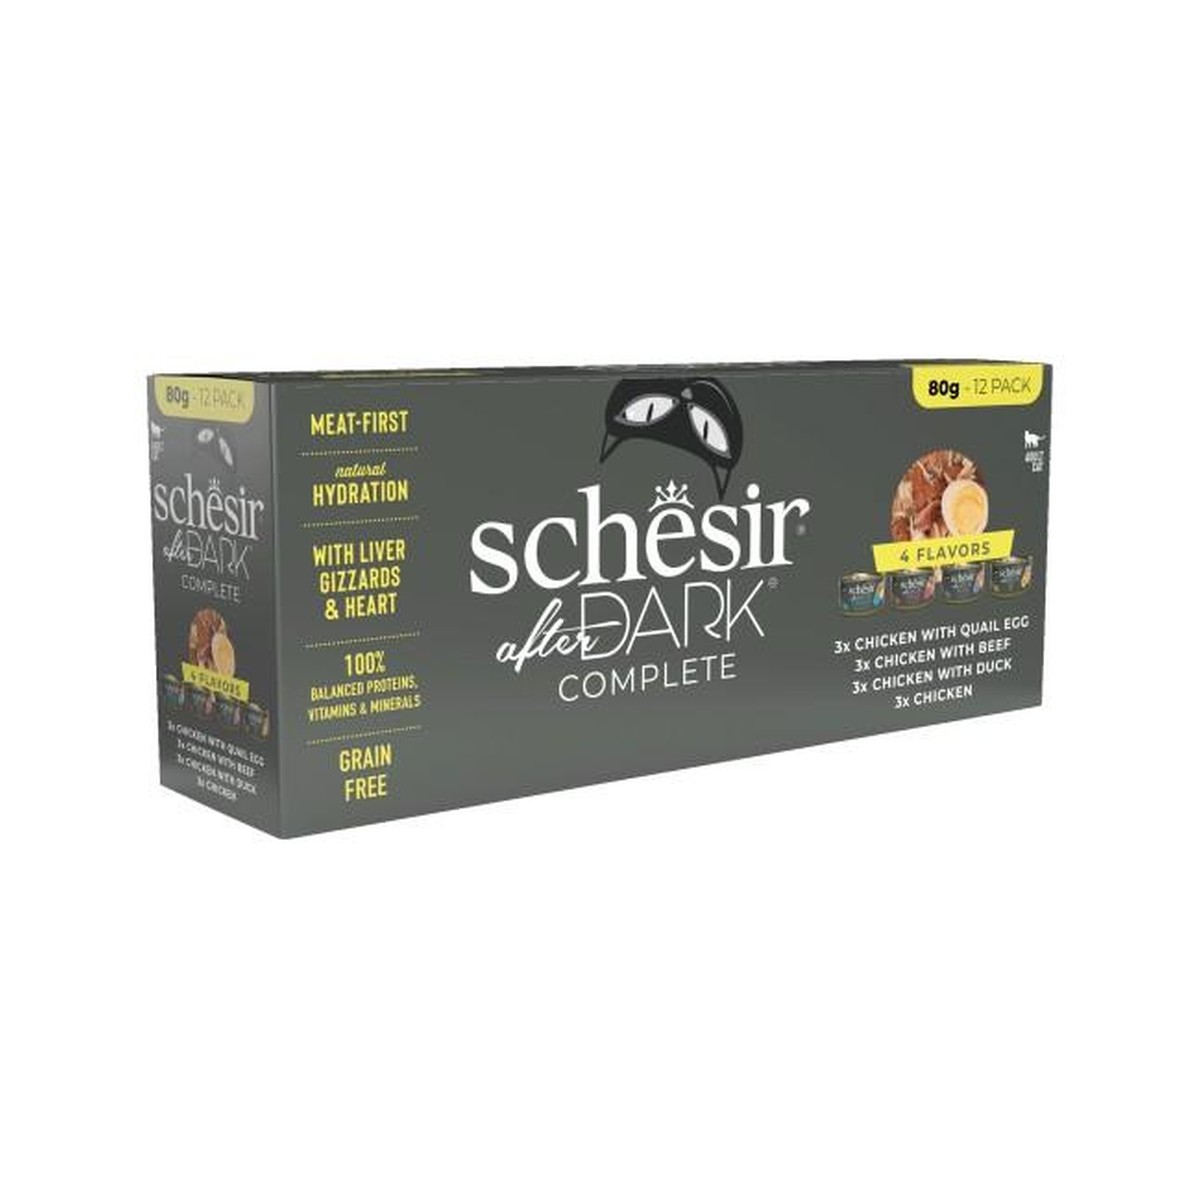 Schesir  Schesir After dark filet bouillon 12x80g variety pack  